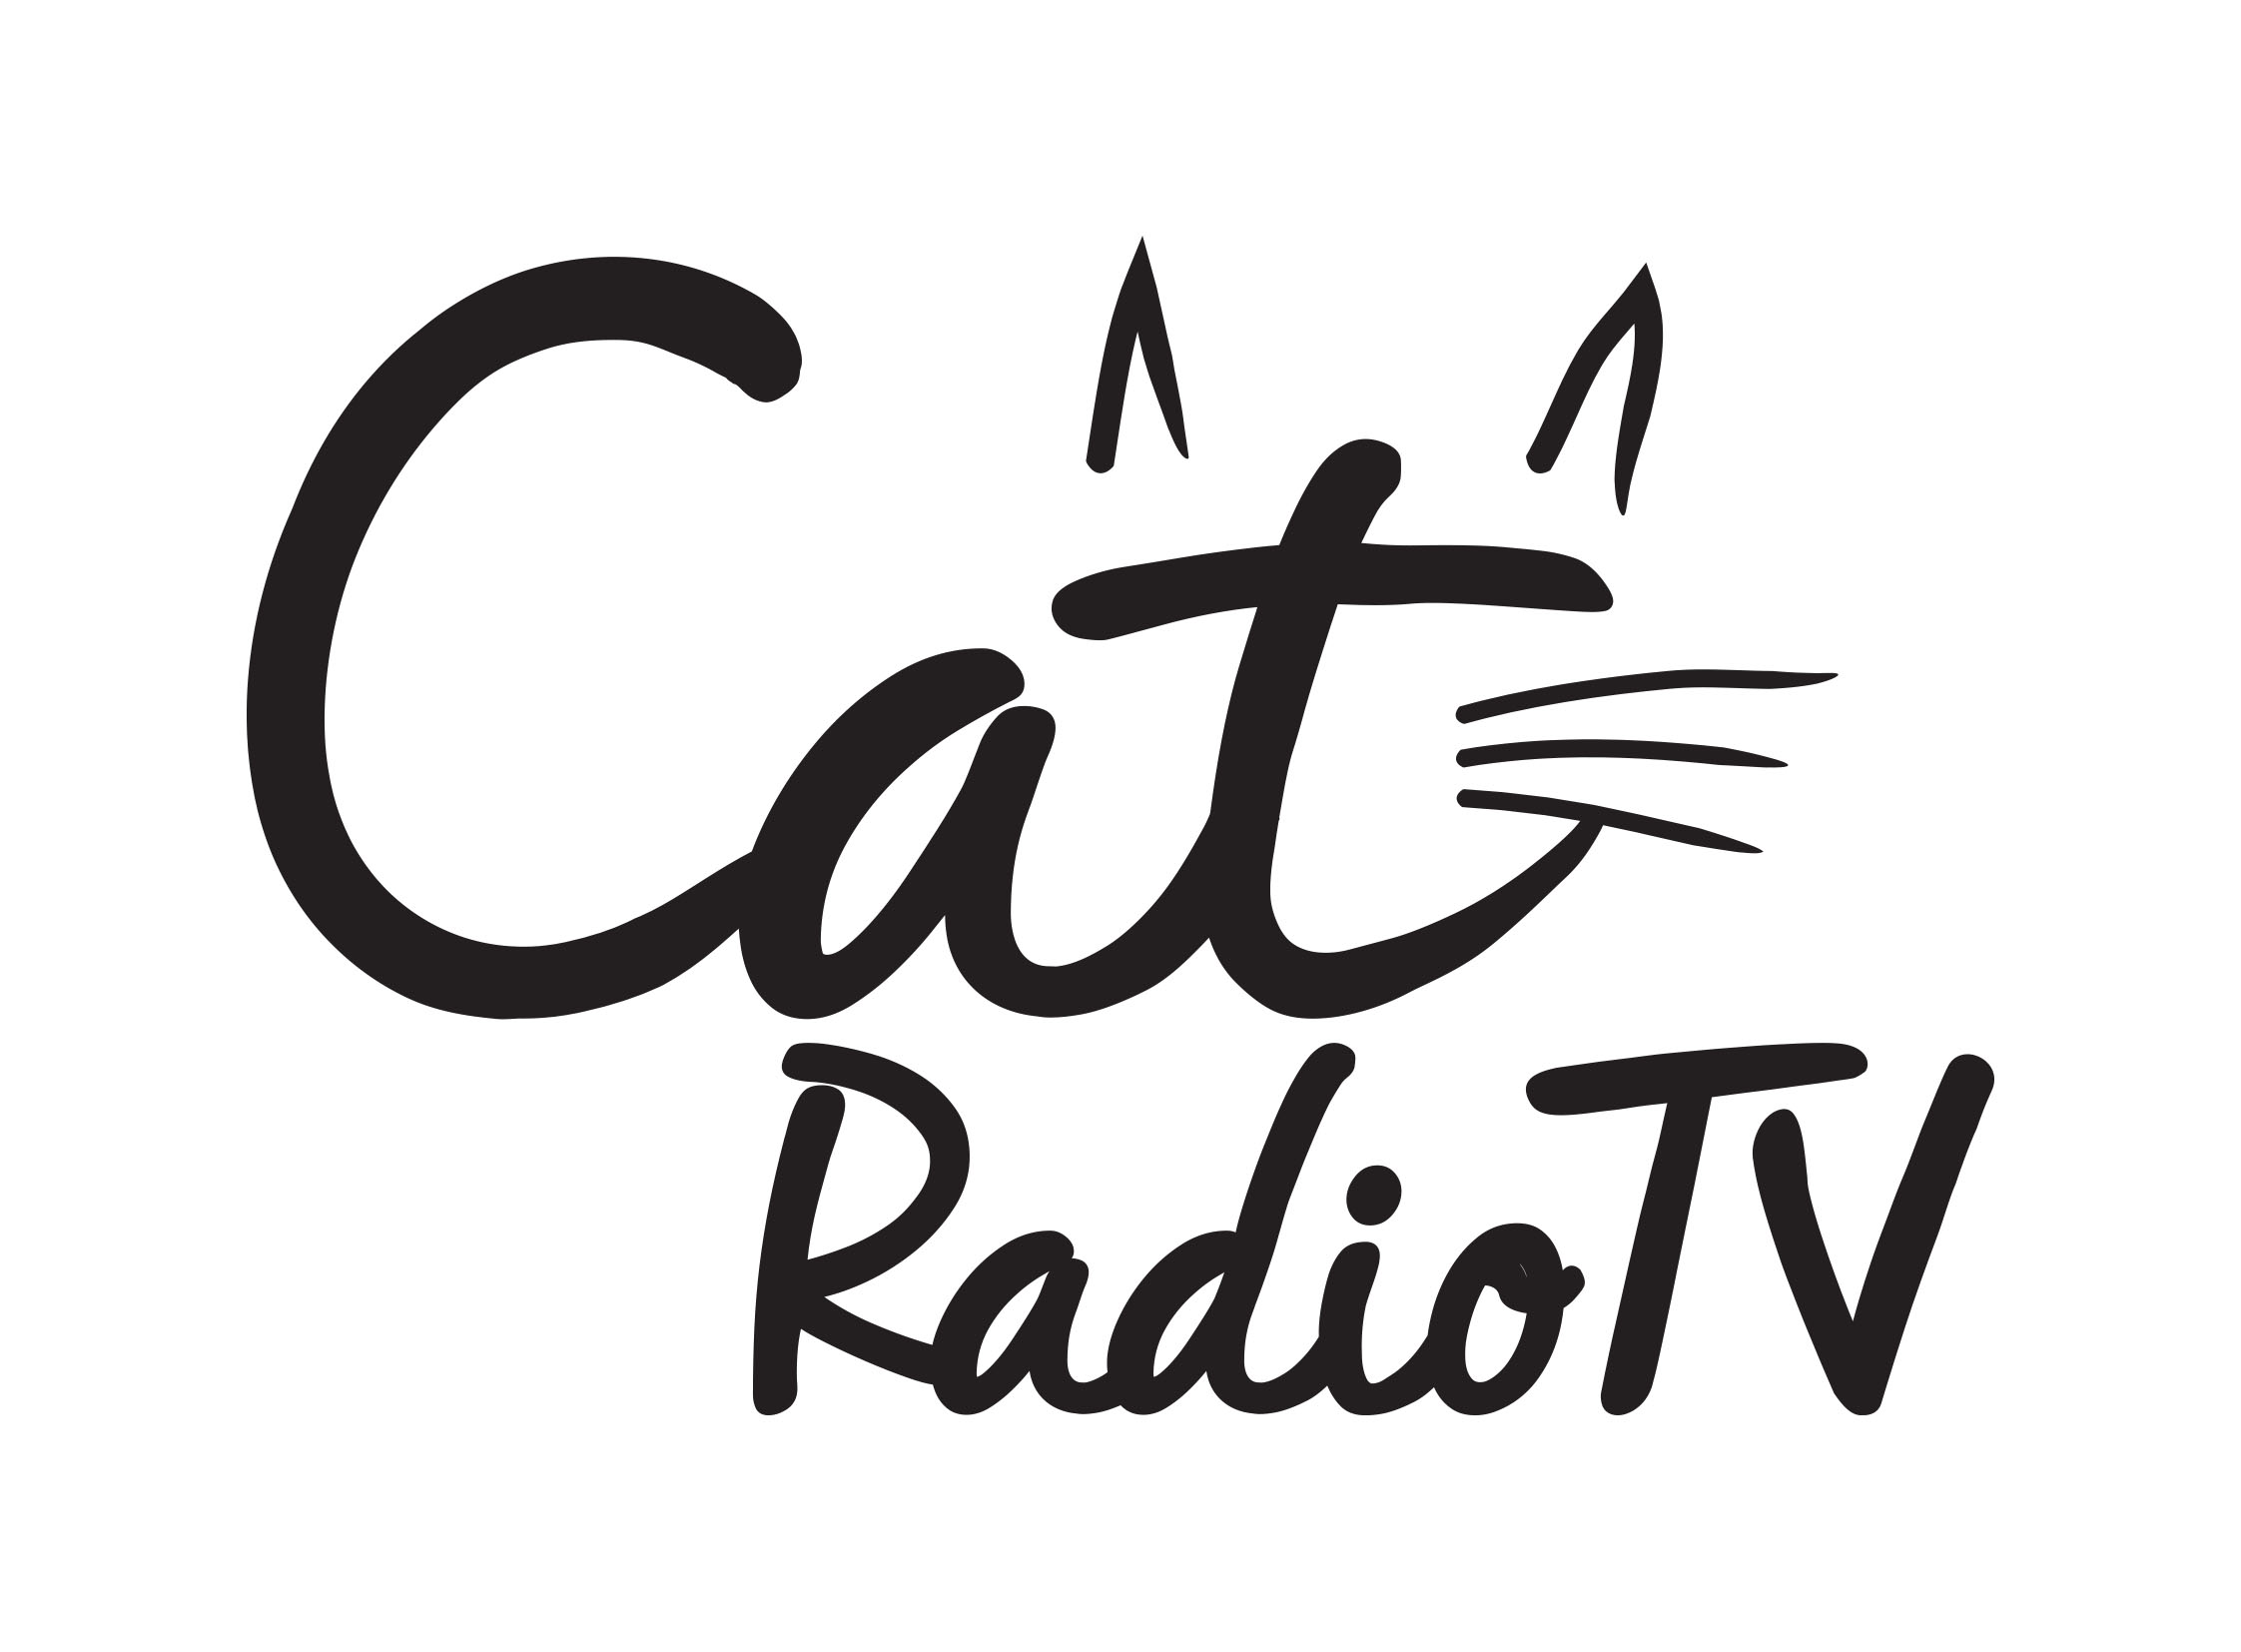 จากรายการวิทยุสู่จอแก้ว! CAT RADIO TV ละครเรื่องแรก ที่สร้างจากเรื่องจริง...บ้าง ไม่จริงบ้าง